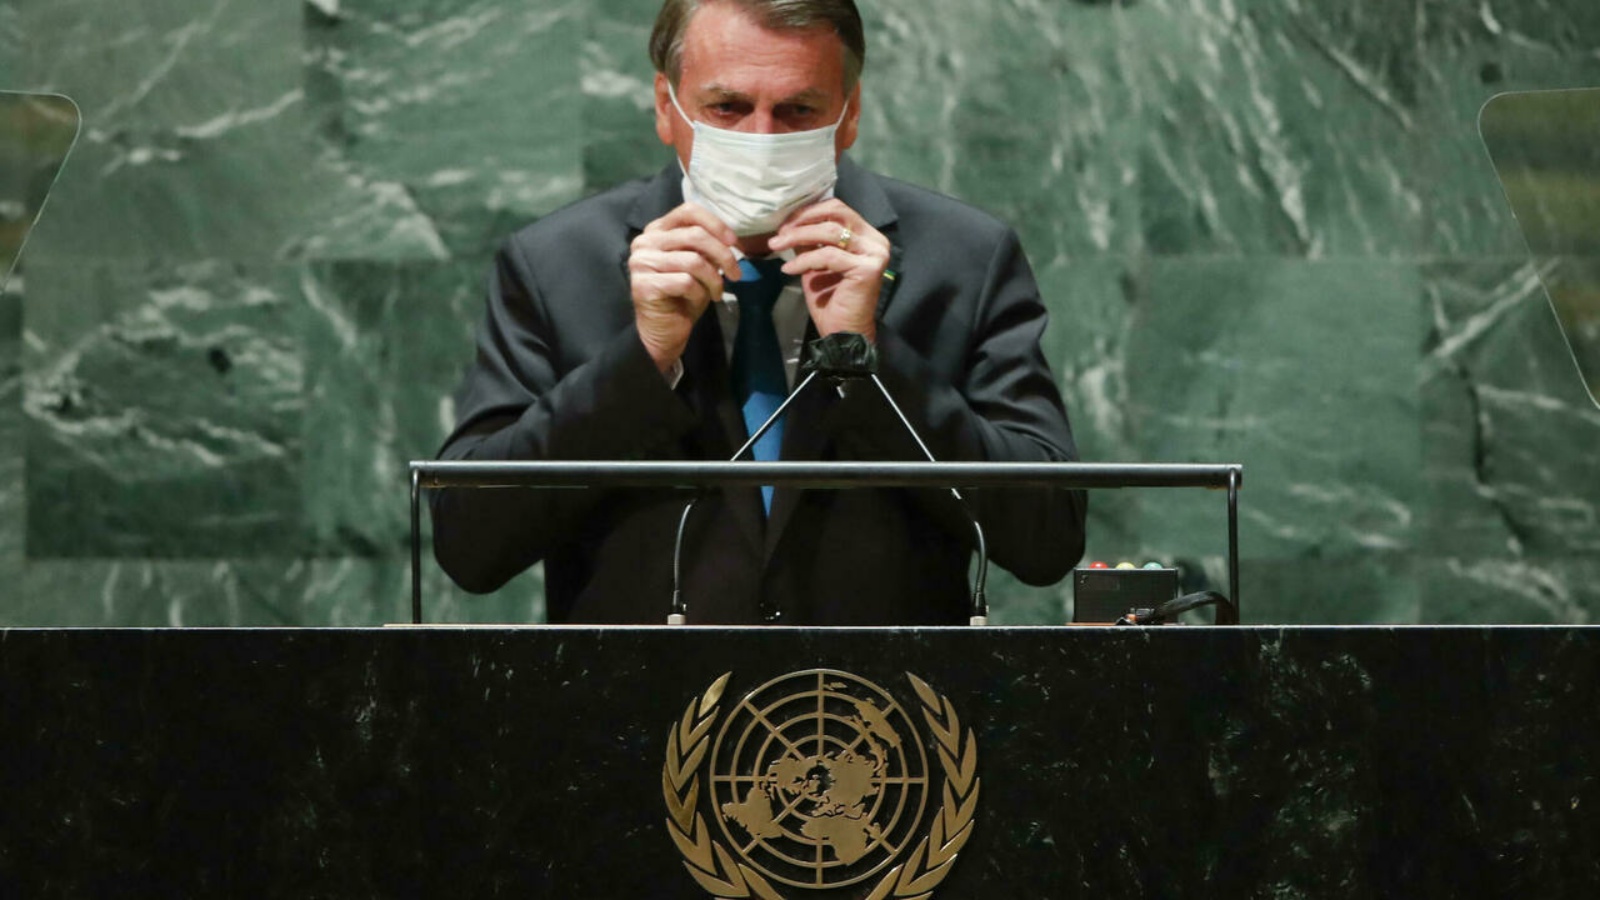 الرئيس البرازيلي جايير بولسونارو يضع قناع الوجه بعد إلقاء كلمة أمام الجمعية العامة للأمم المتحدة في 21 أيلول/سبتمبر 2021.